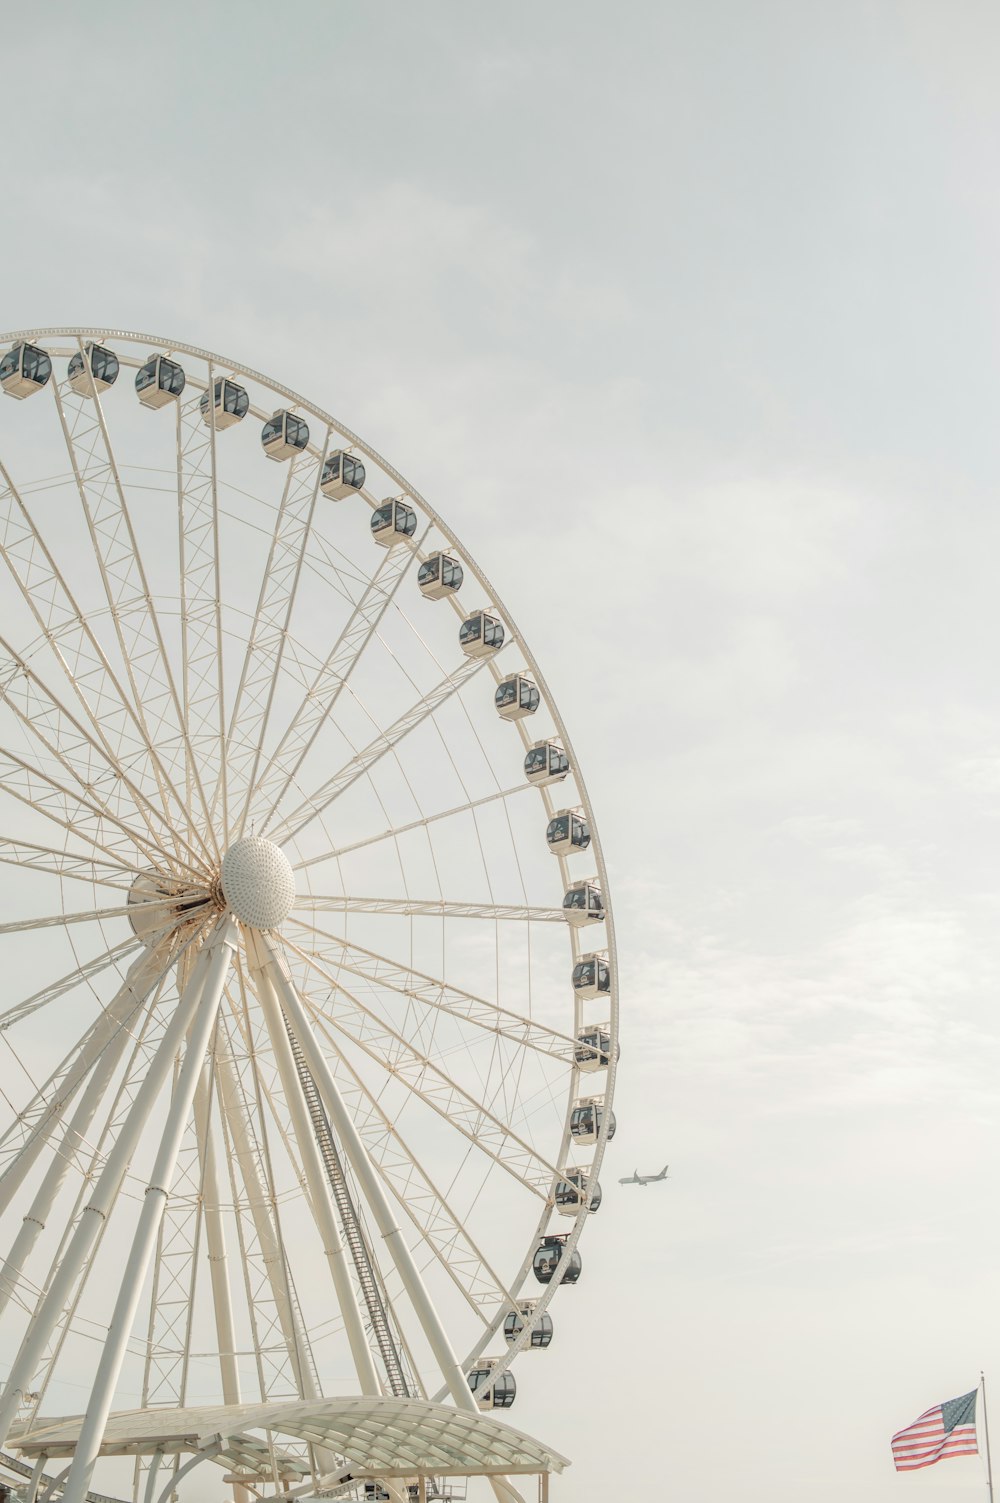 Foto von Ferris Whele aus einem niedrigen Winkel